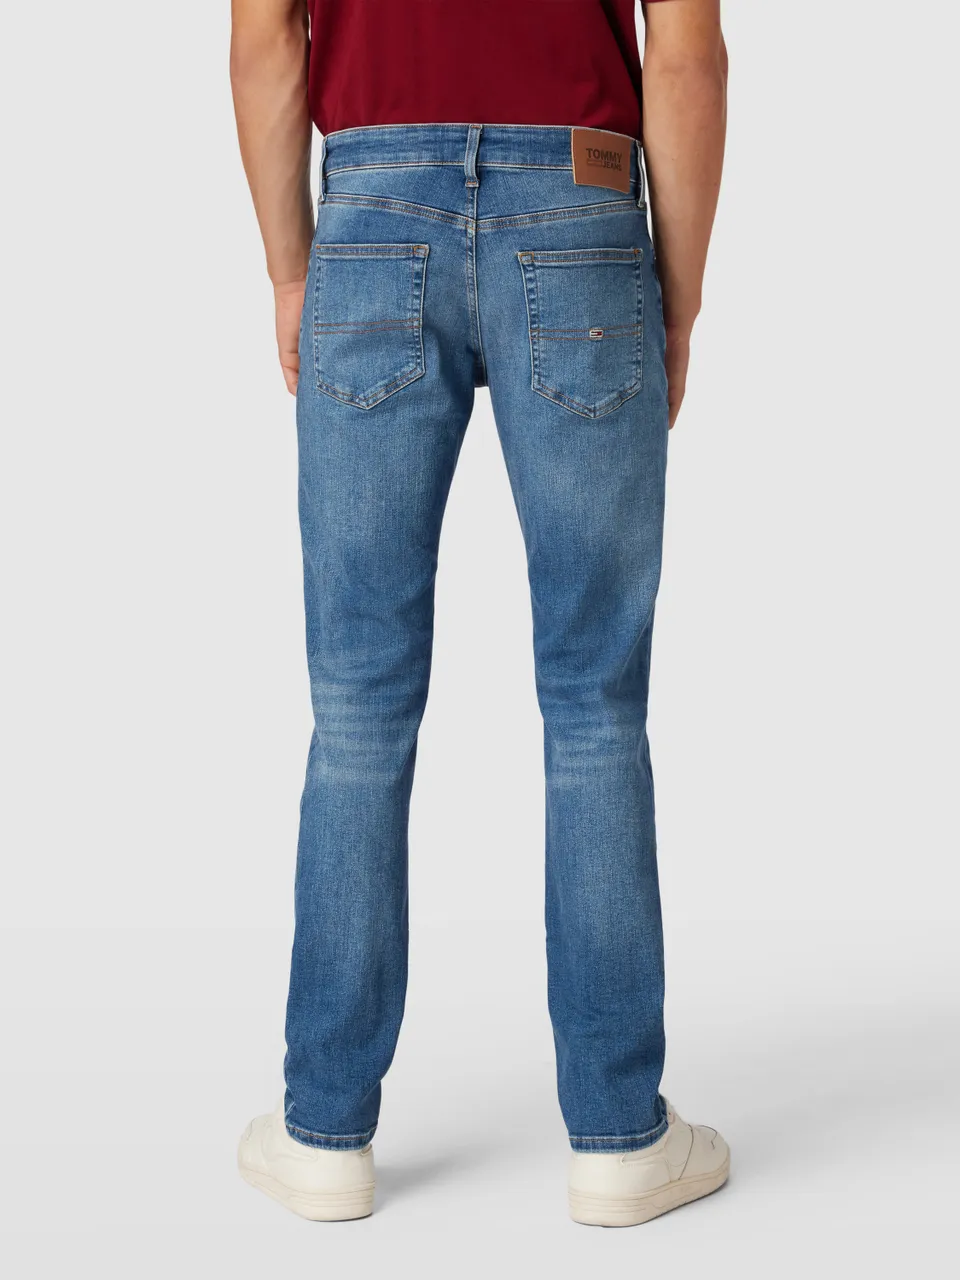 Tommy Hilfiger Jeans \'ANTON\' DM0DM16637 - Preise vergleichen